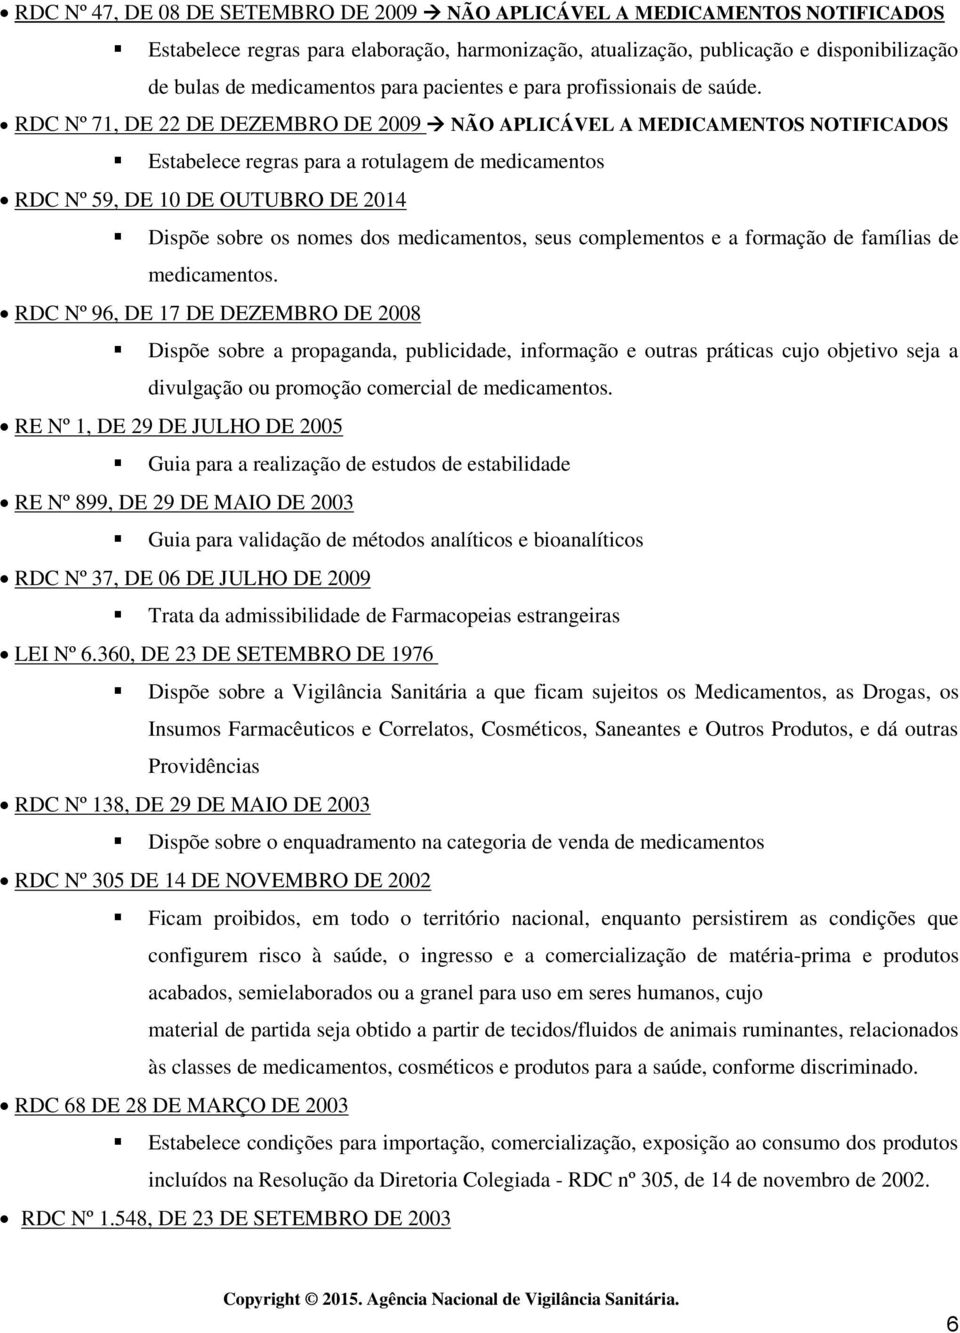 RDC Nº 71, DE 22 DE DEZEMBRO DE 2009 NÃO APLICÁVEL A MEDICAMENTOS NOTIFICADOS Estabelece regras para a rotulagem de medicamentos RDC Nº 59, DE 10 DE OUTUBRO DE 2014 Dispõe sobre os nomes dos